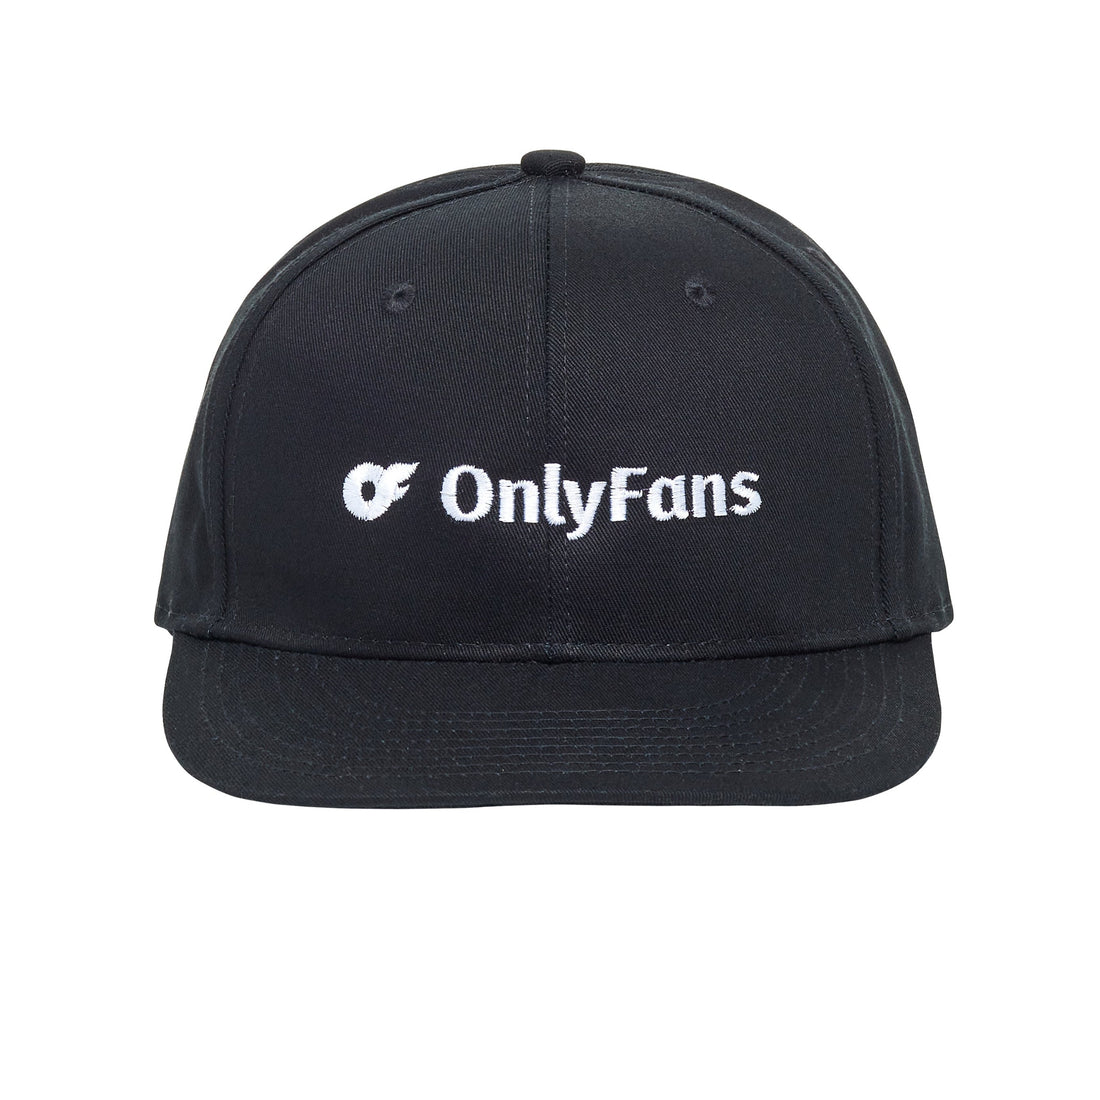 OnlyFans Snapback Hat - Black